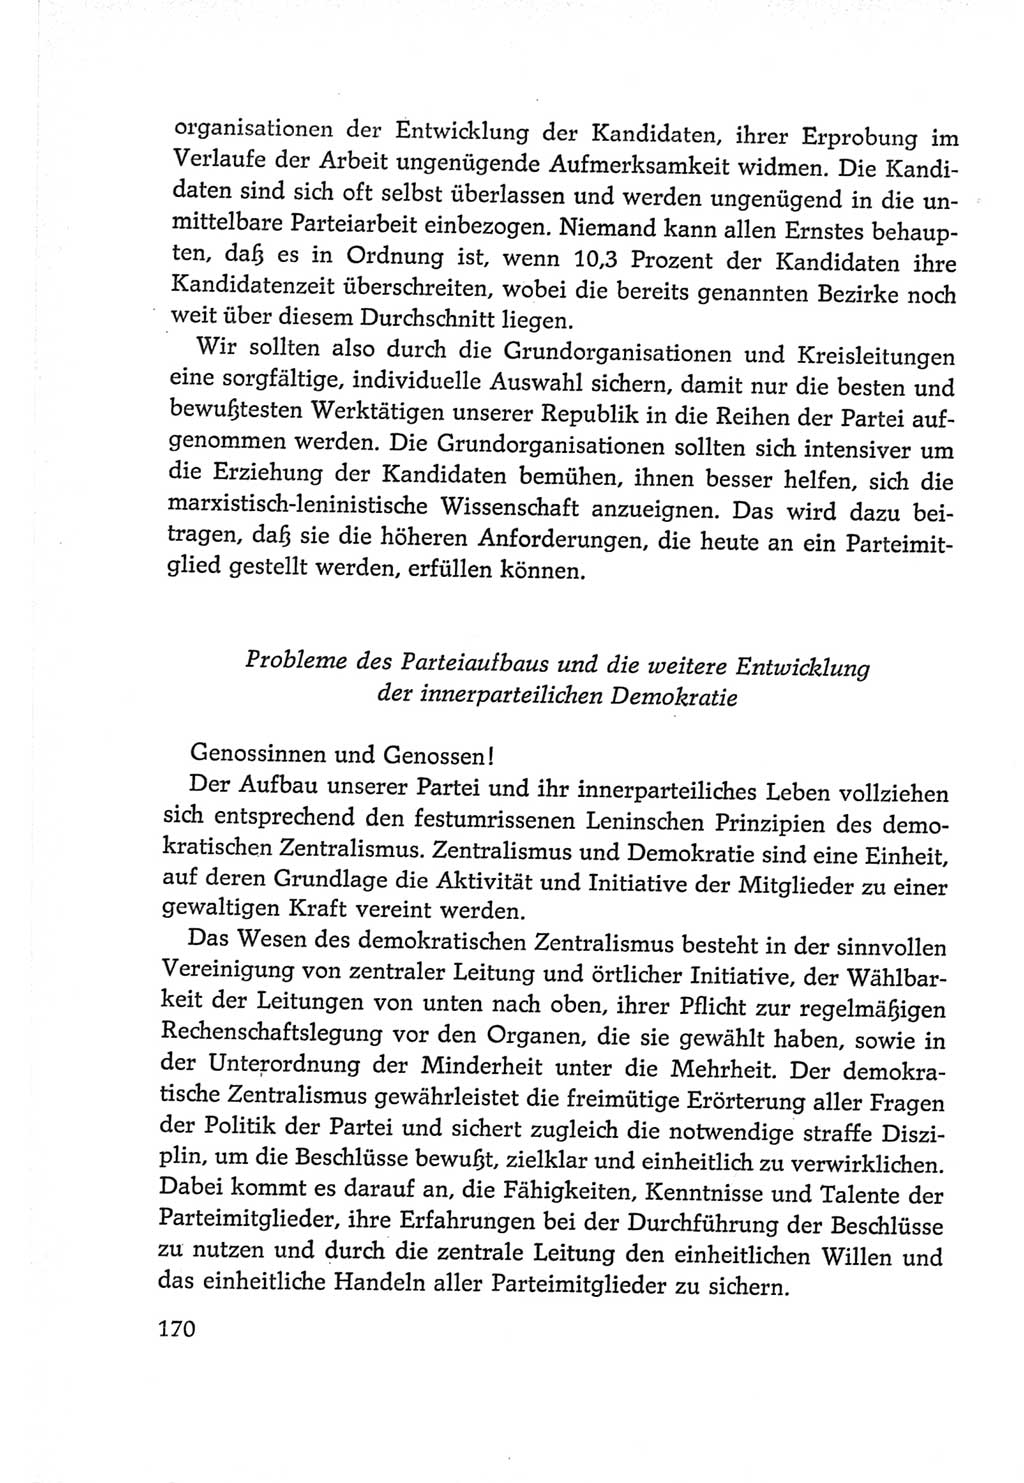 Protokoll der Verhandlungen des Ⅵ. Parteitages der Sozialistischen Einheitspartei Deutschlands (SED) [Deutsche Demokratische Republik (DDR)] 1963, Band Ⅱ, Seite 170 (Prot. Verh. Ⅵ. PT SED DDR 1963, Bd. Ⅱ, S. 170)